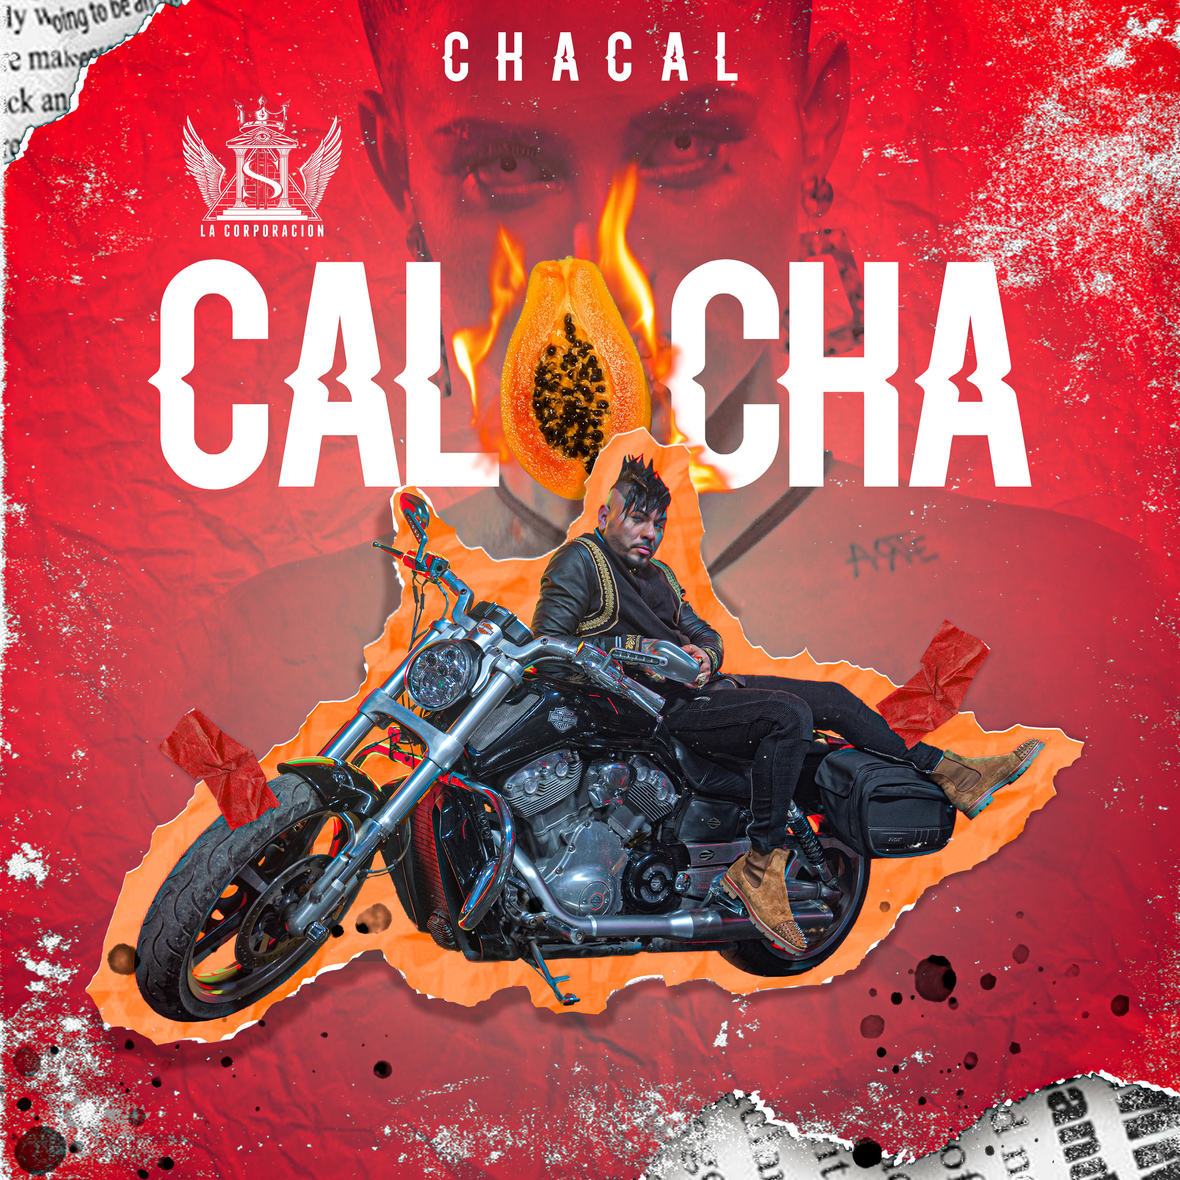 CHACAL lanza nuevo sencillo “Calocha”